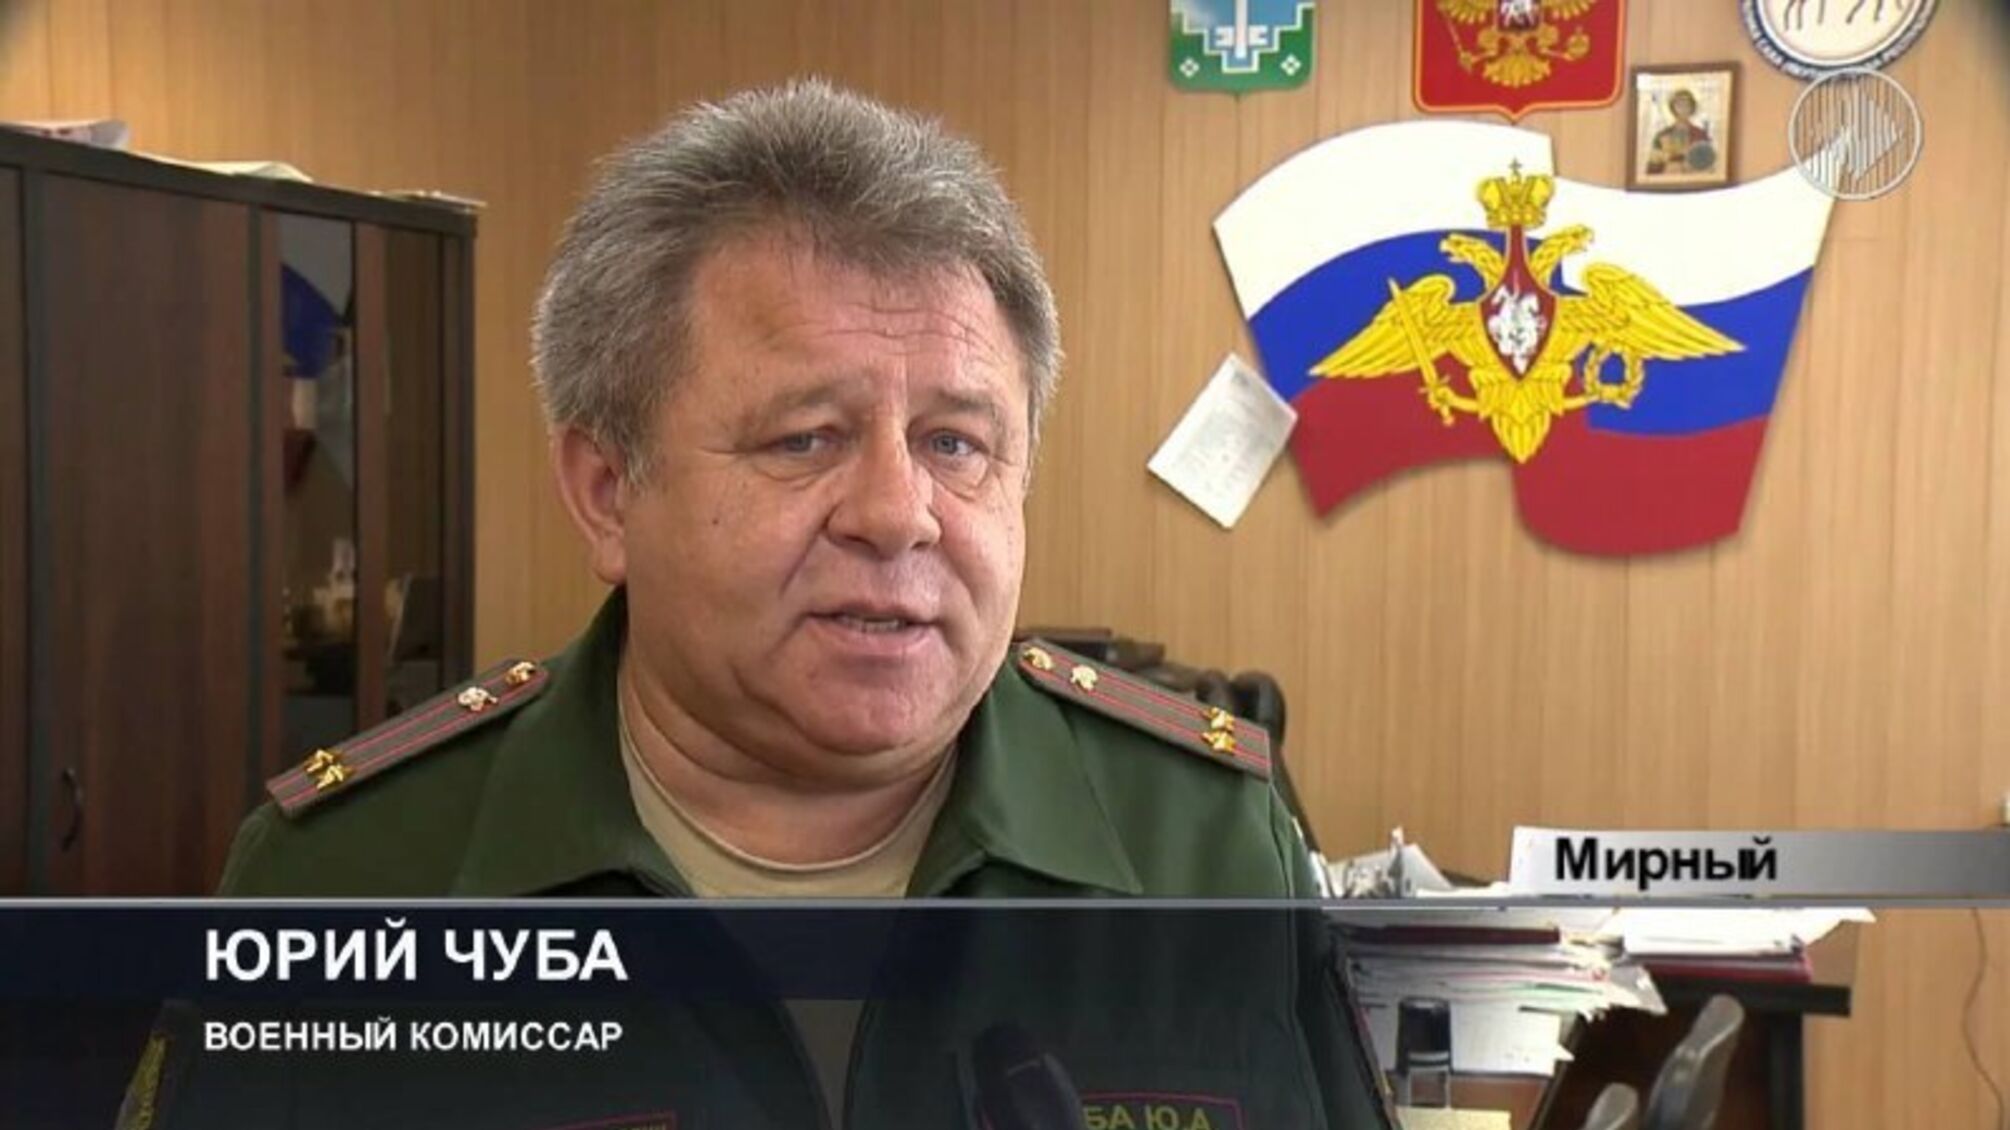 Відбувся штрафом: у Якутії комісар 'замінував' власний військкомат